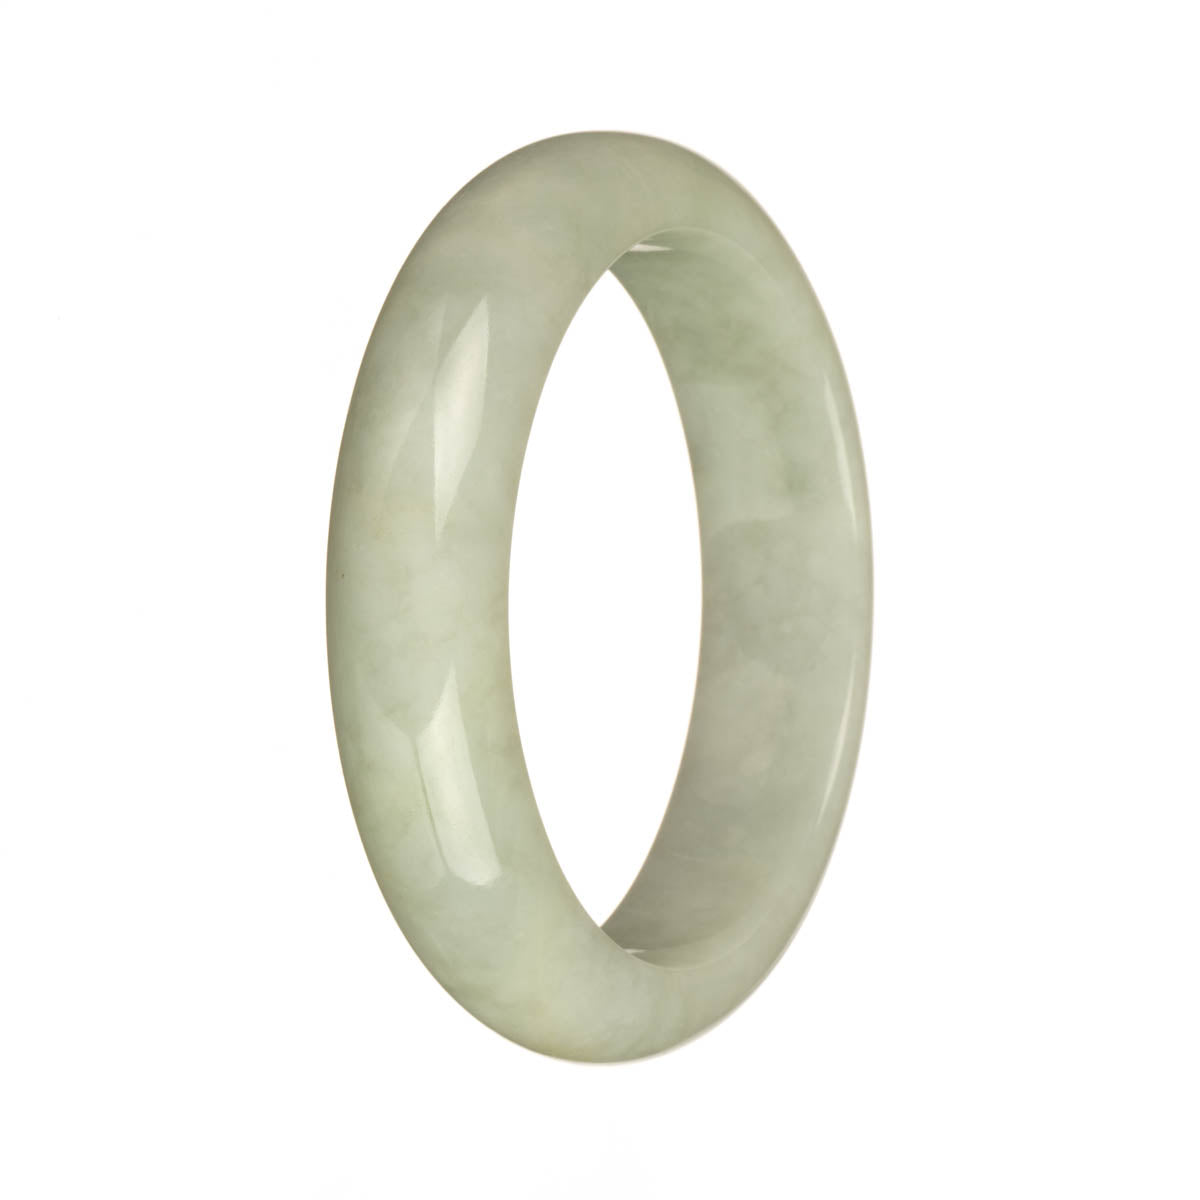 56.7mm Greyish White Jade Bangle Bracelet